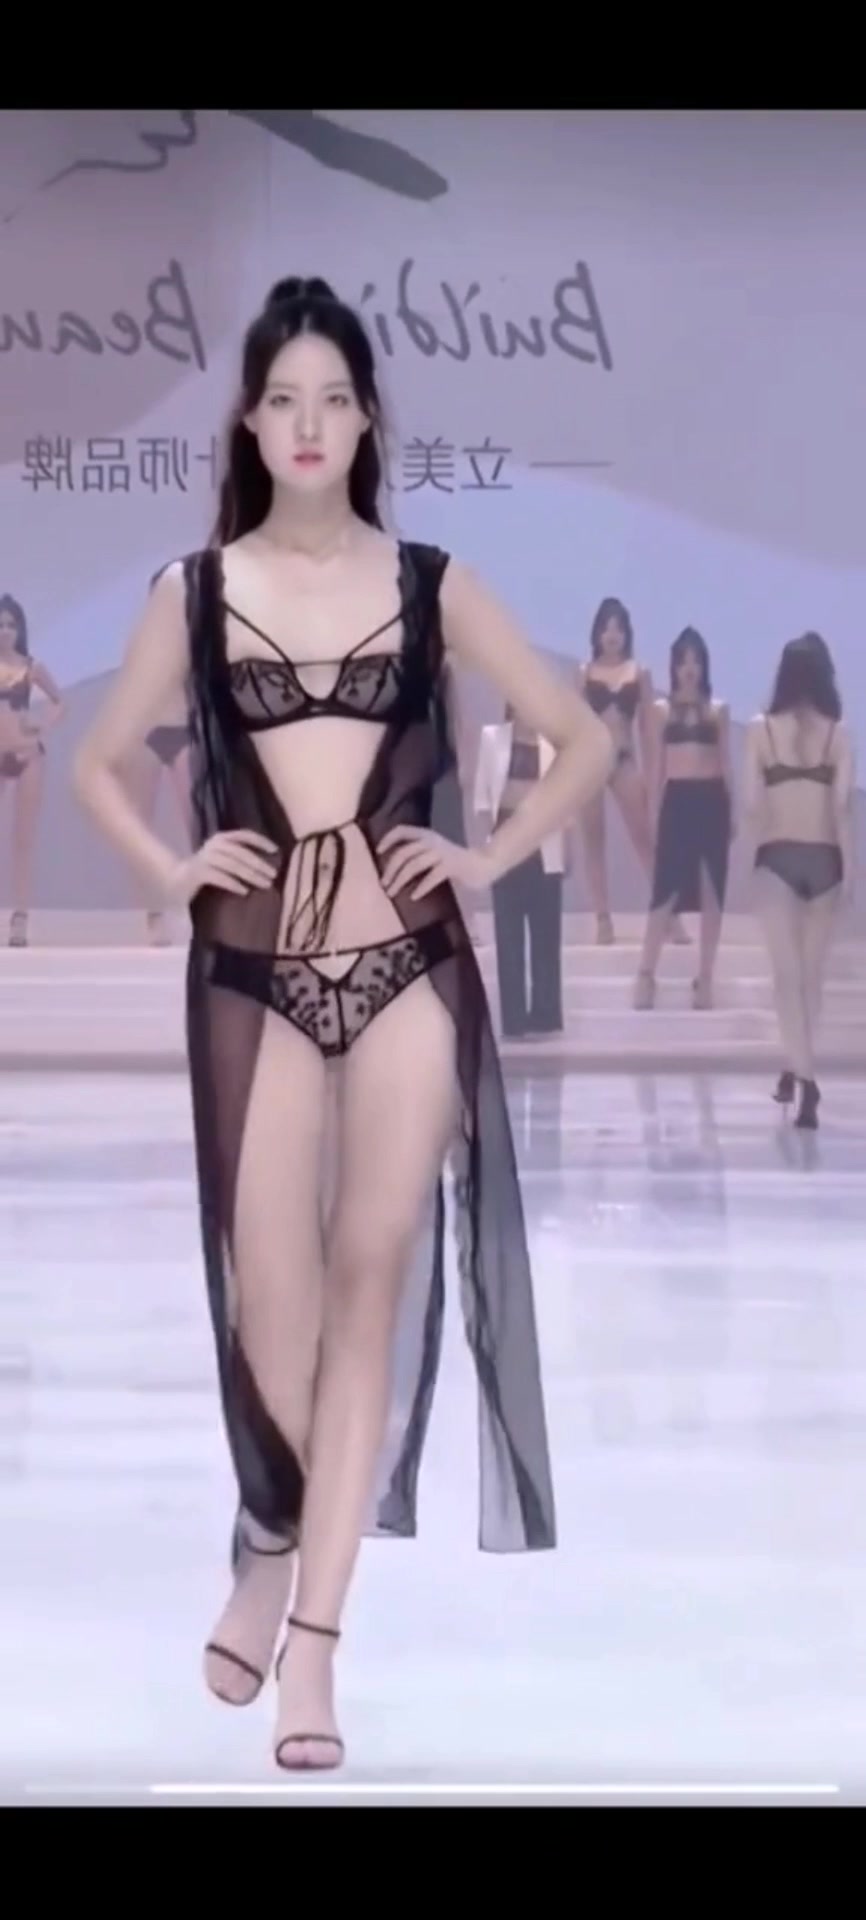 【セクシーランジェリー下着姿でランウェイウォーキングのちっぱい美脚な中国美女】#chinese #chinesewomen #beauty #model #swimsuit 